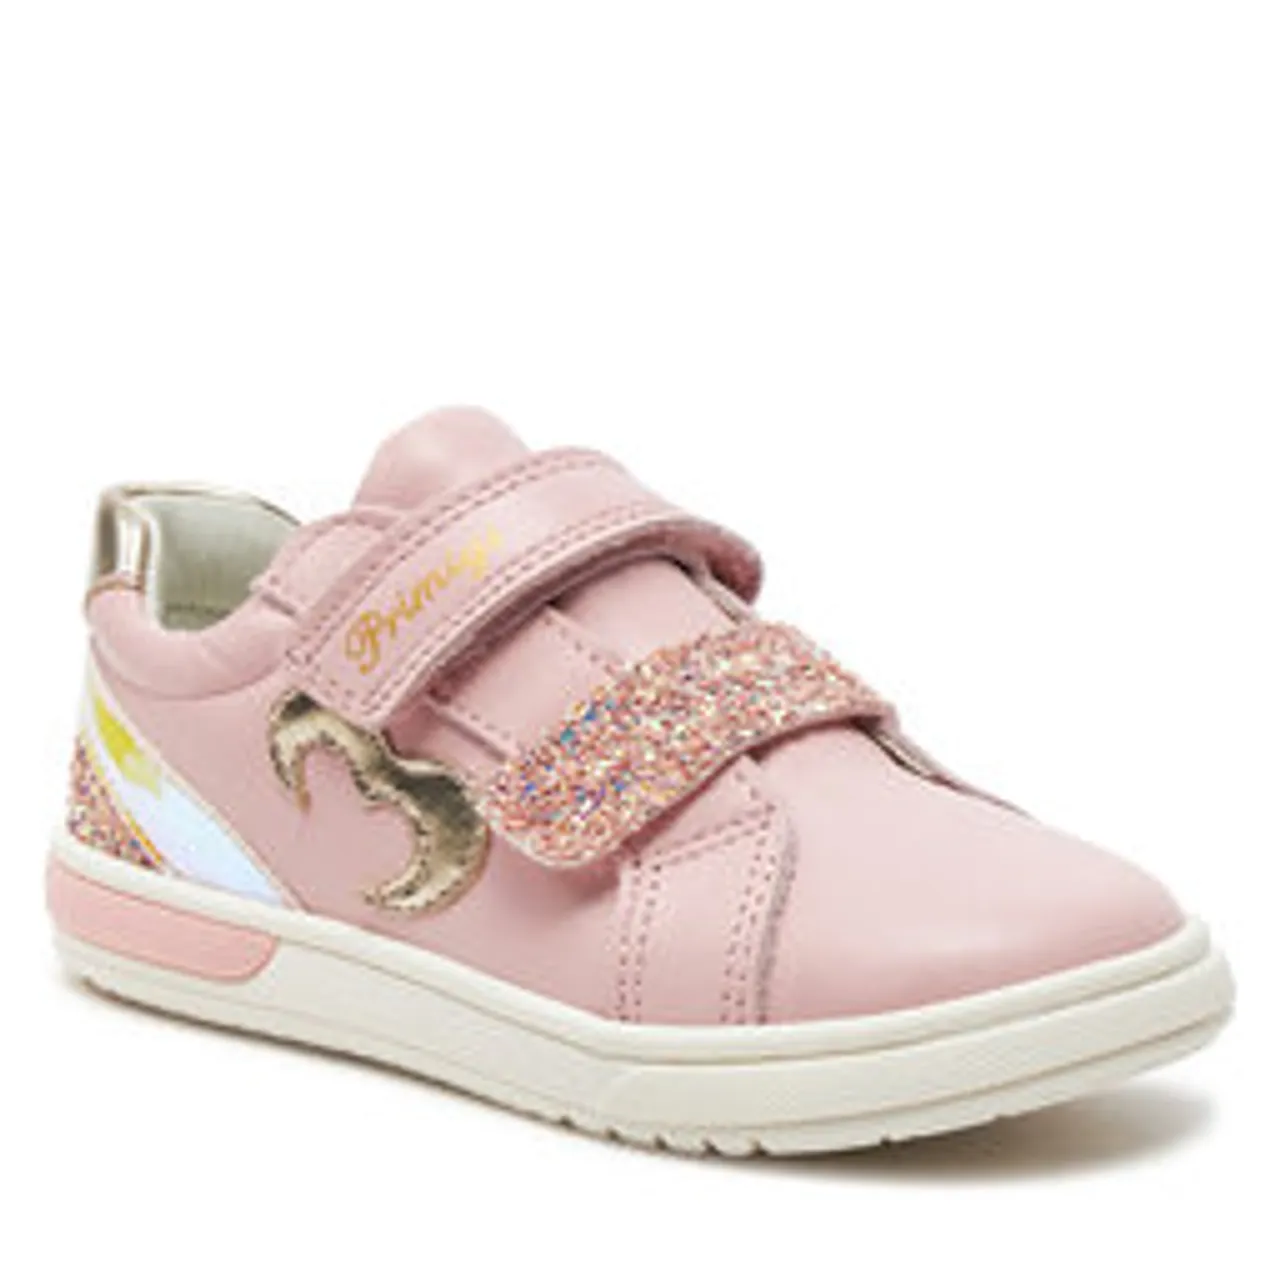 Sneakers Primigi 5905211 S Baby/Cipria